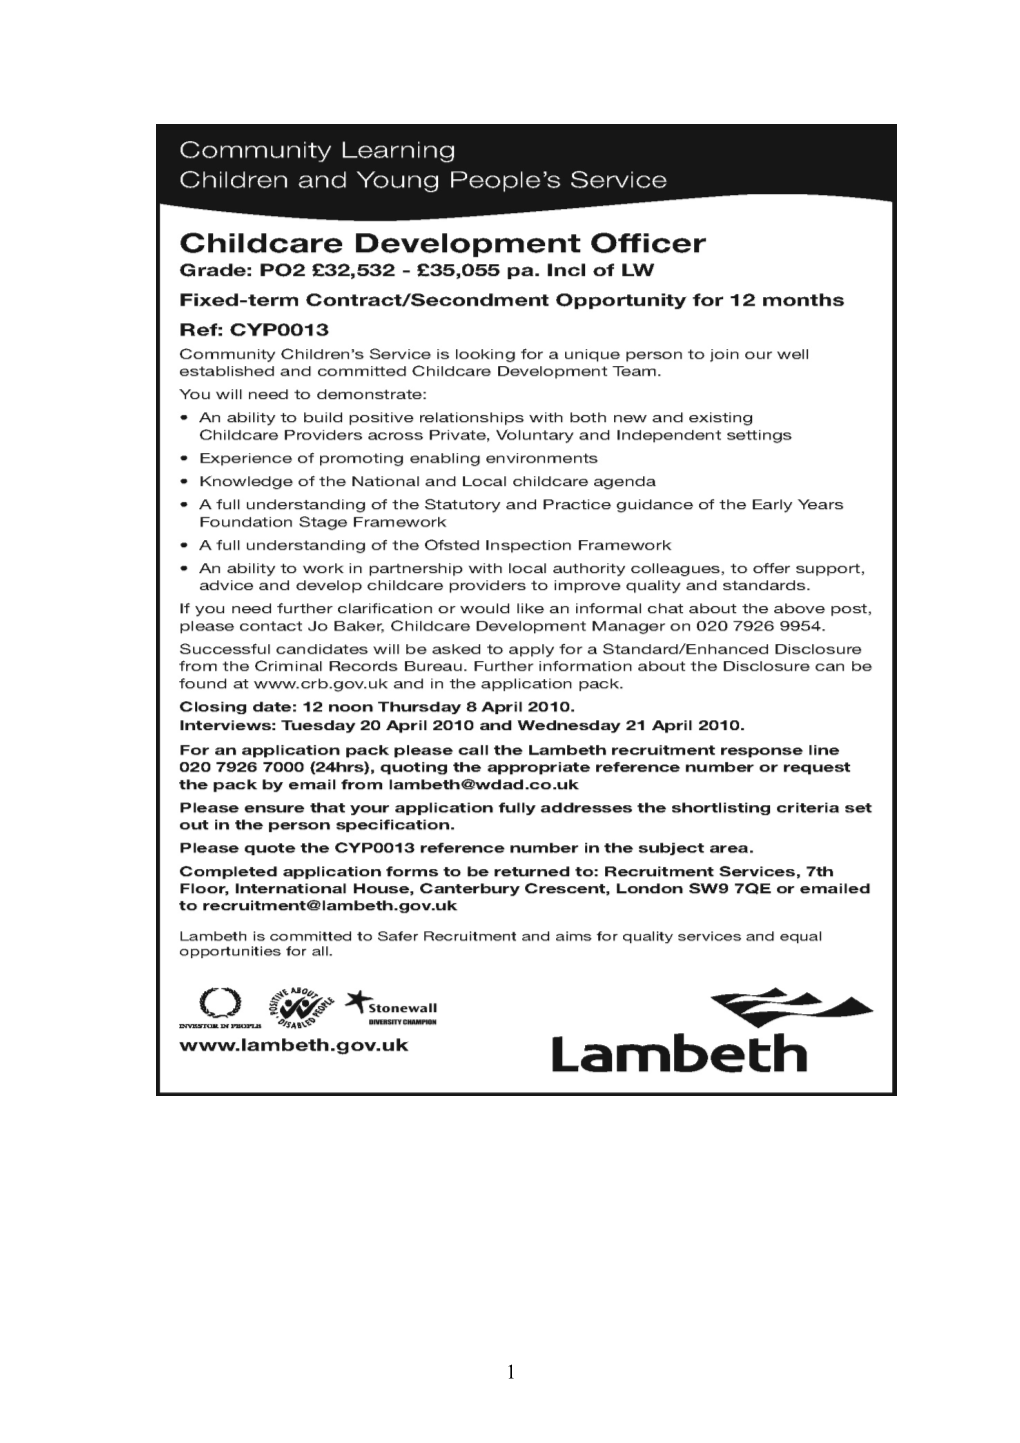 CYP0013 - Childcare Development Officer - Advert Jpeg JD PS